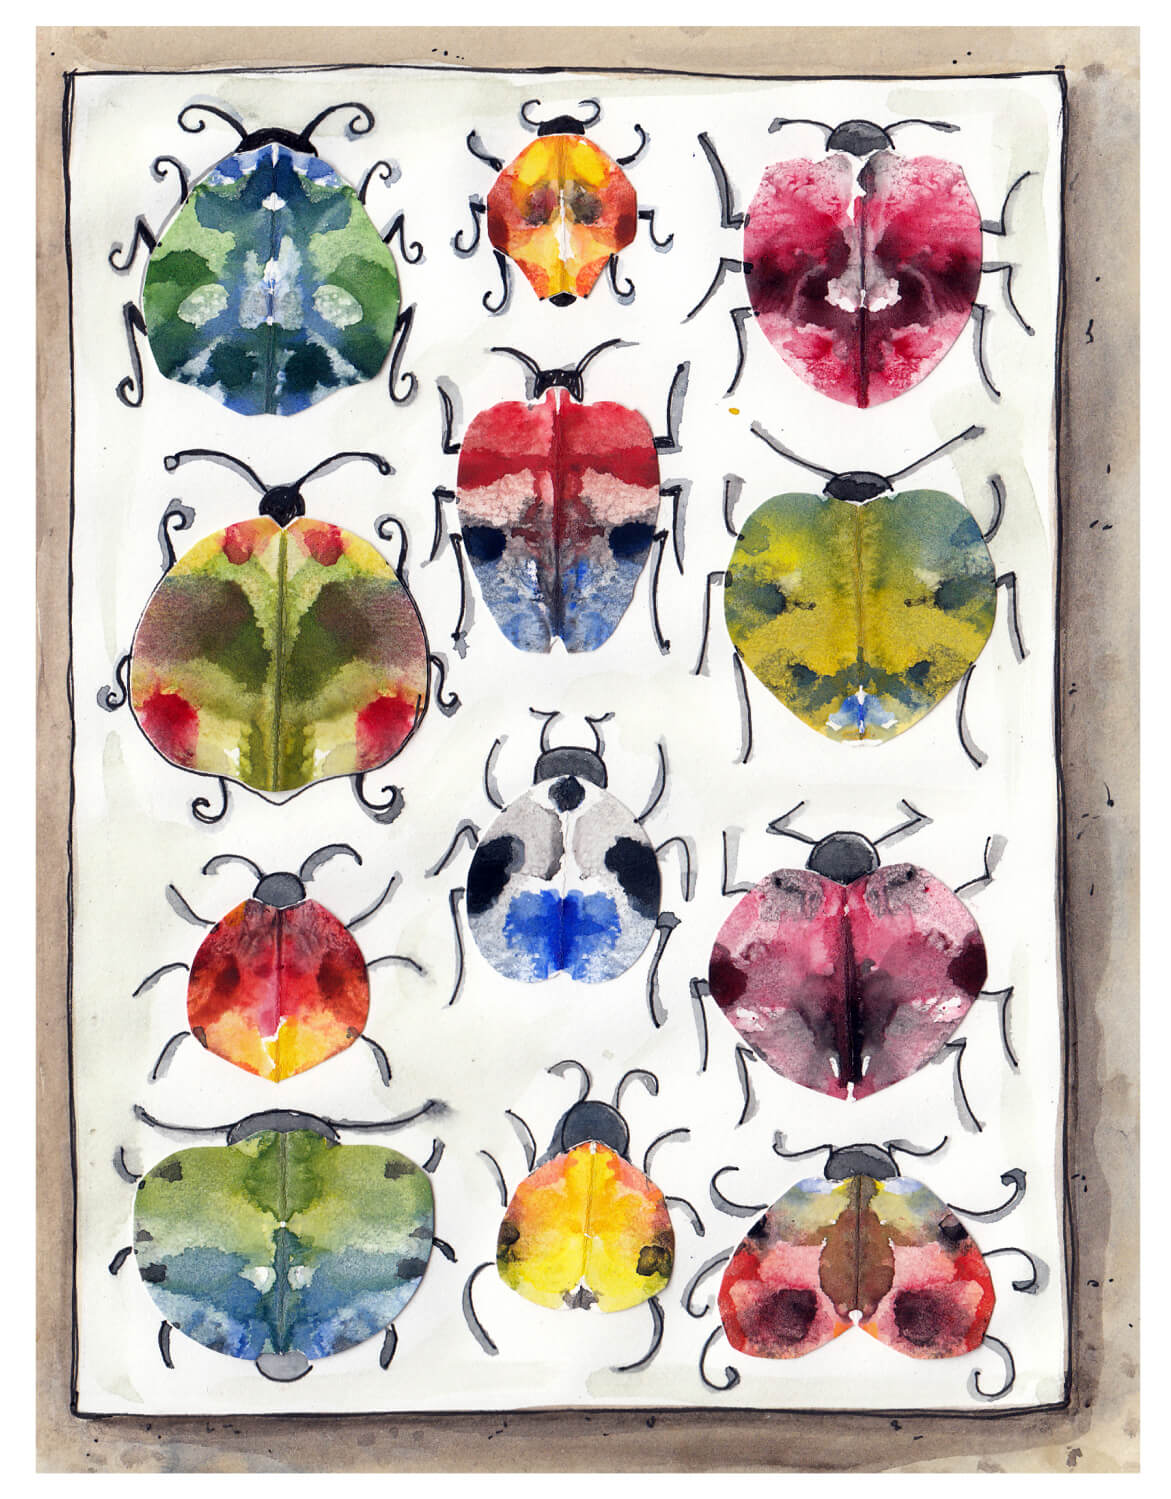 Eingefärbe Käfer-Zeichnungen auf Papier